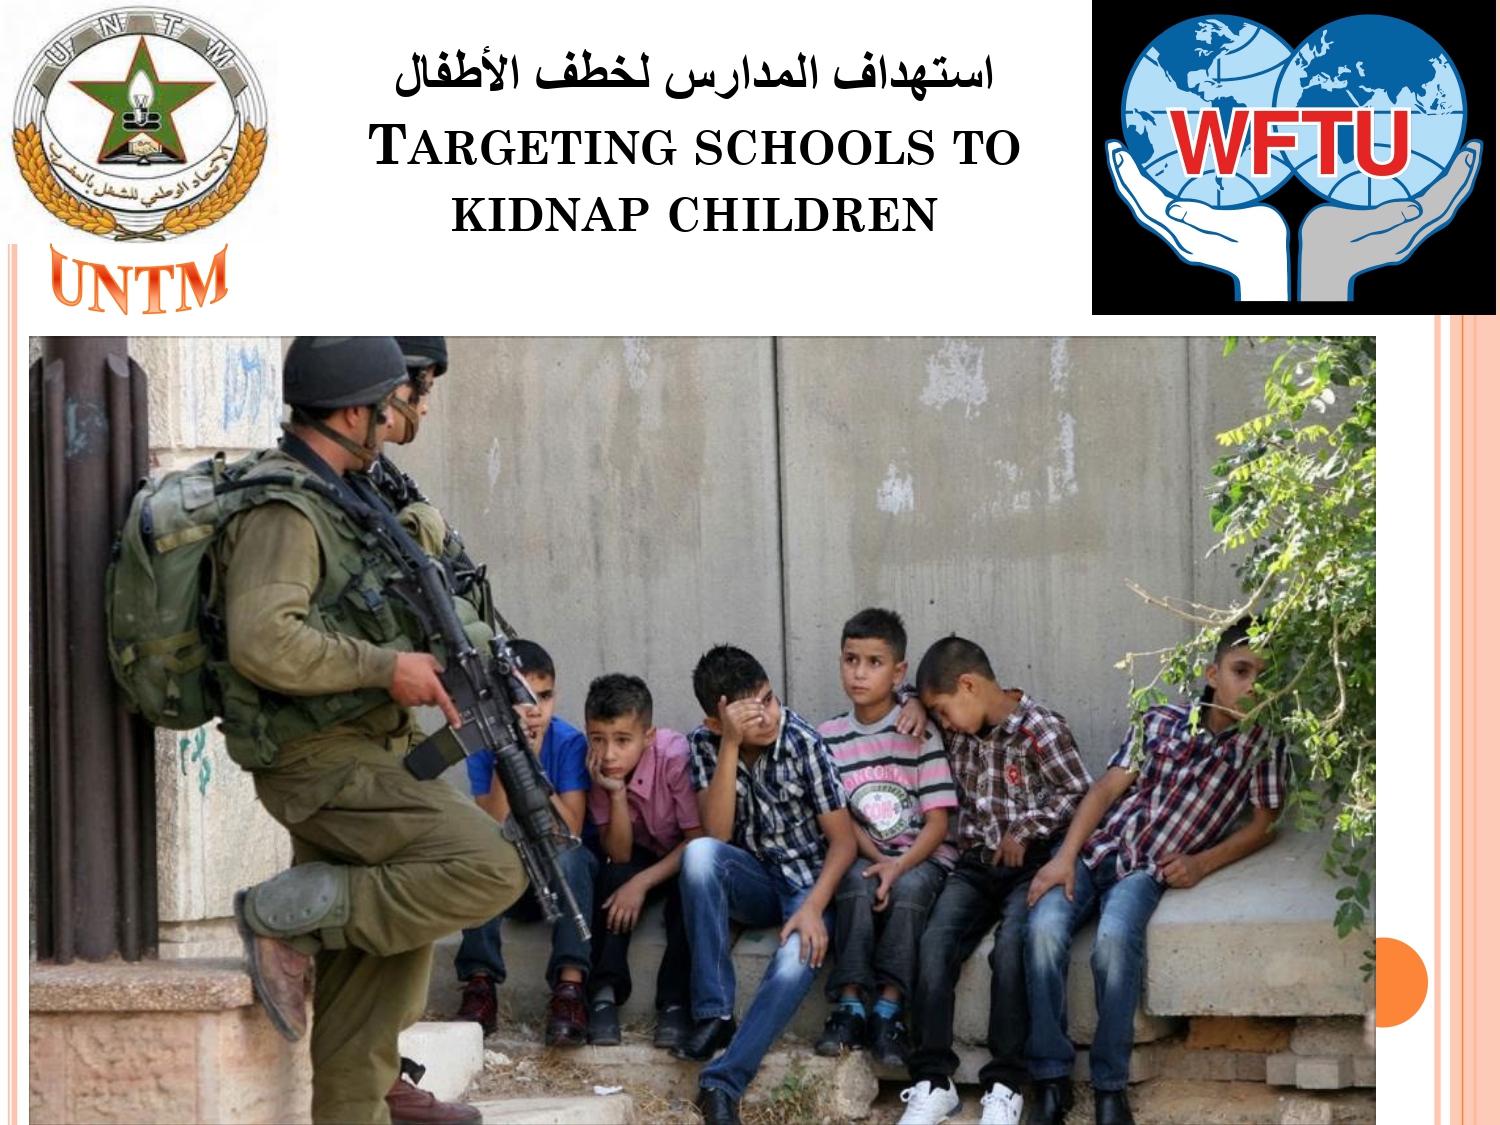 اعتقال الأطفال الفلسطينيين في سجون الإسرائيلية page 00161691657223